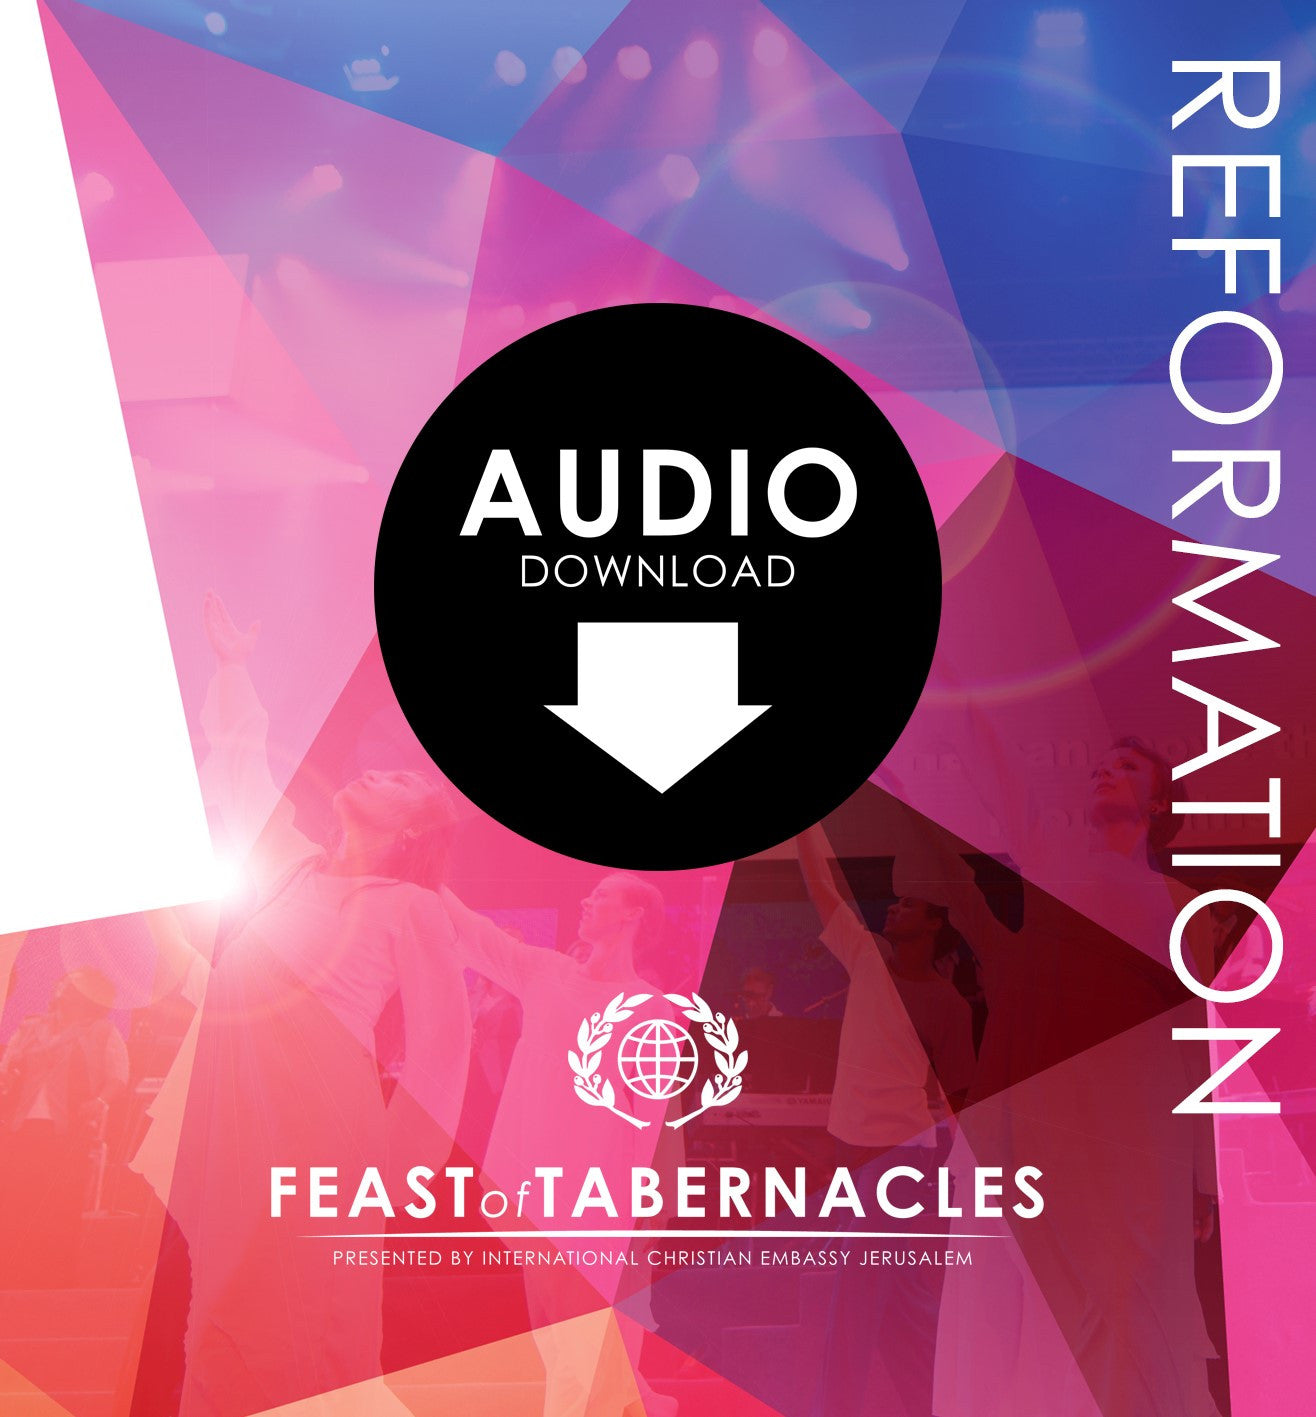 2015 Reformation - Derek Frank - seminar Reformation part 3  Audio Download